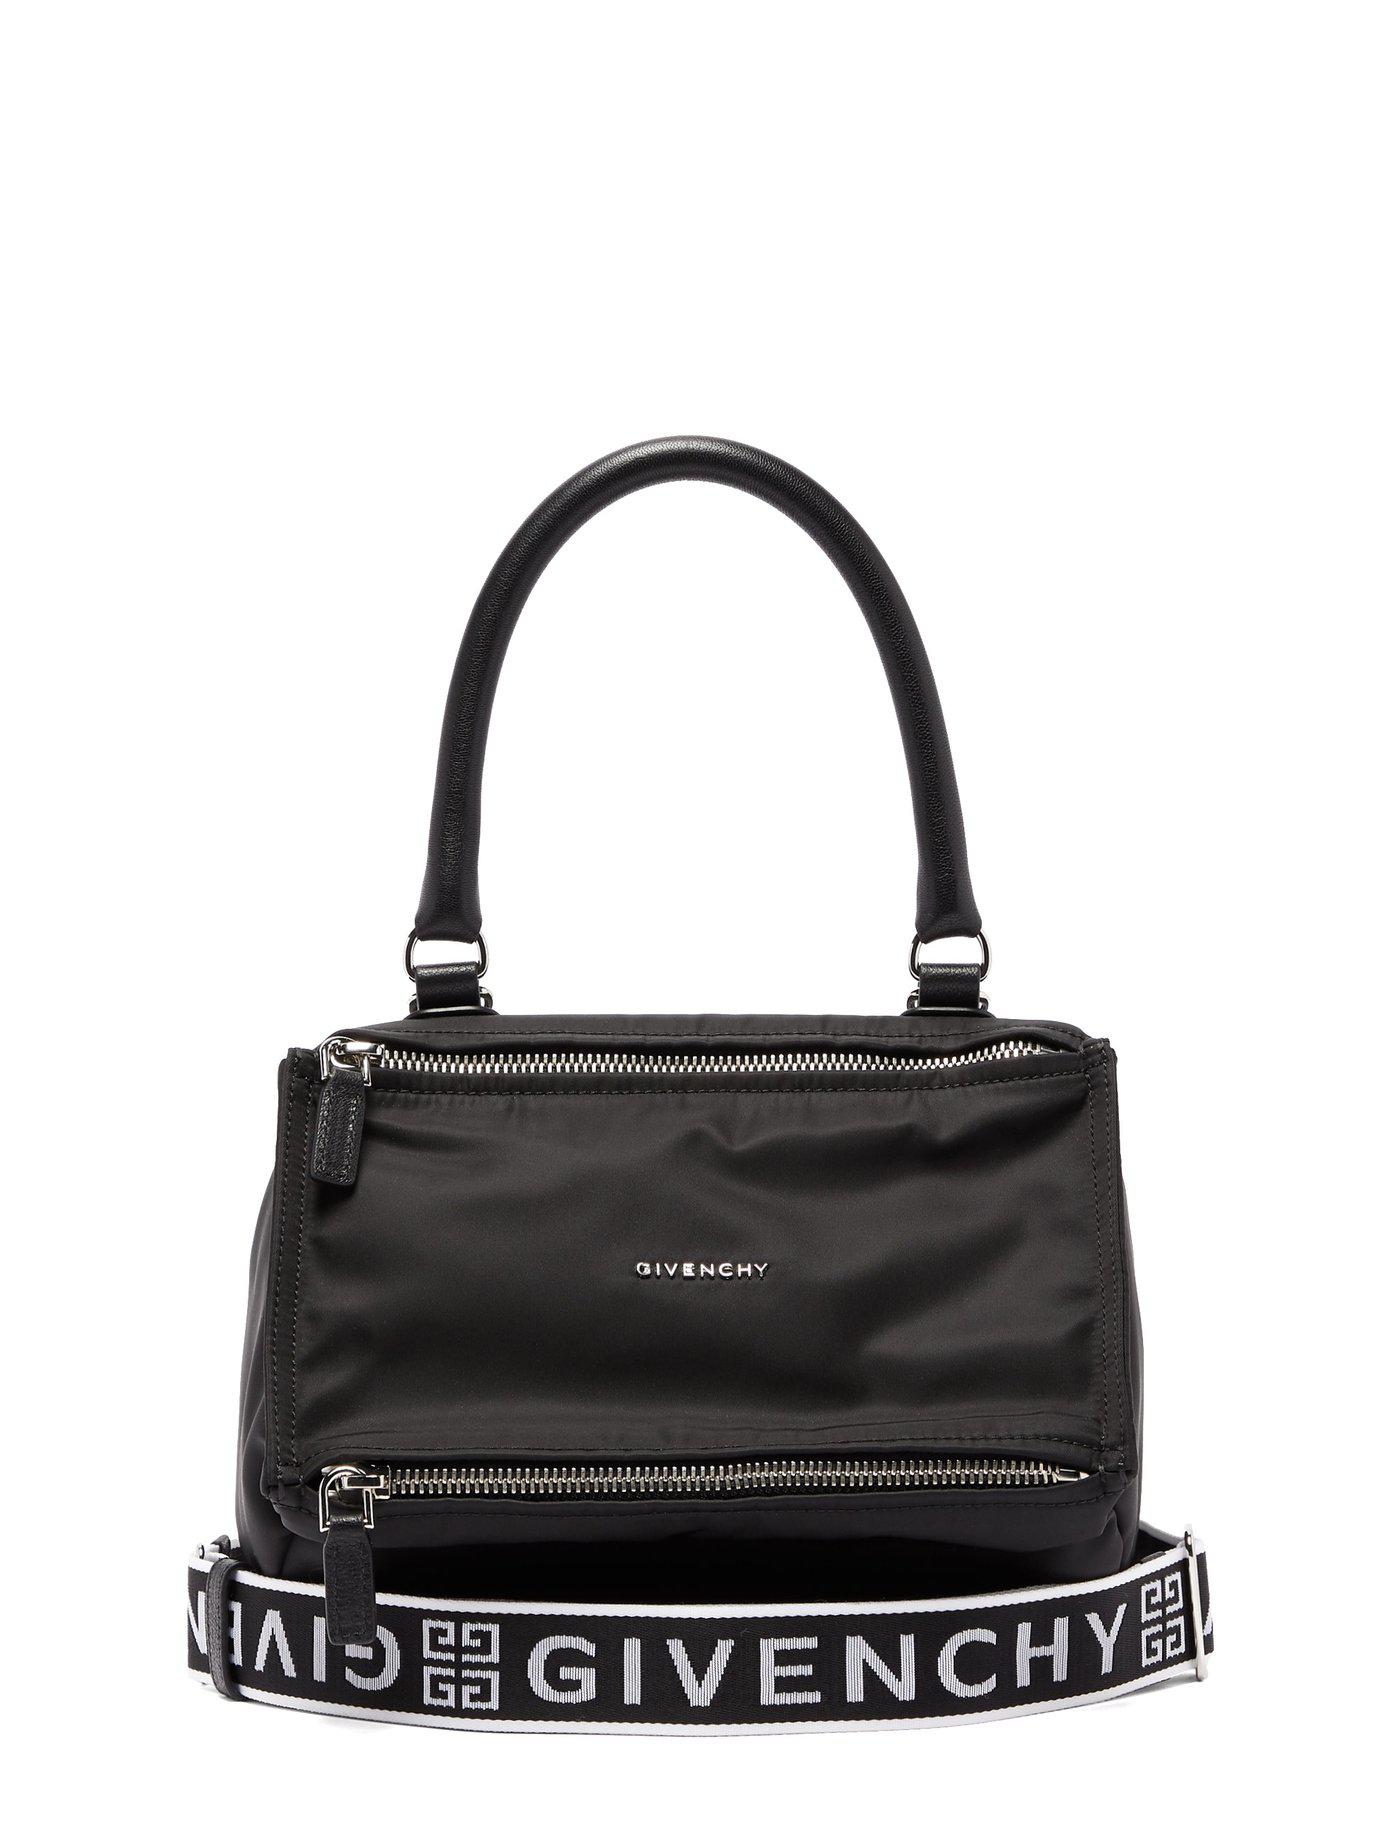 Bunke af hjort pause Givenchy Pandora Nylon Bag in Black | Lyst